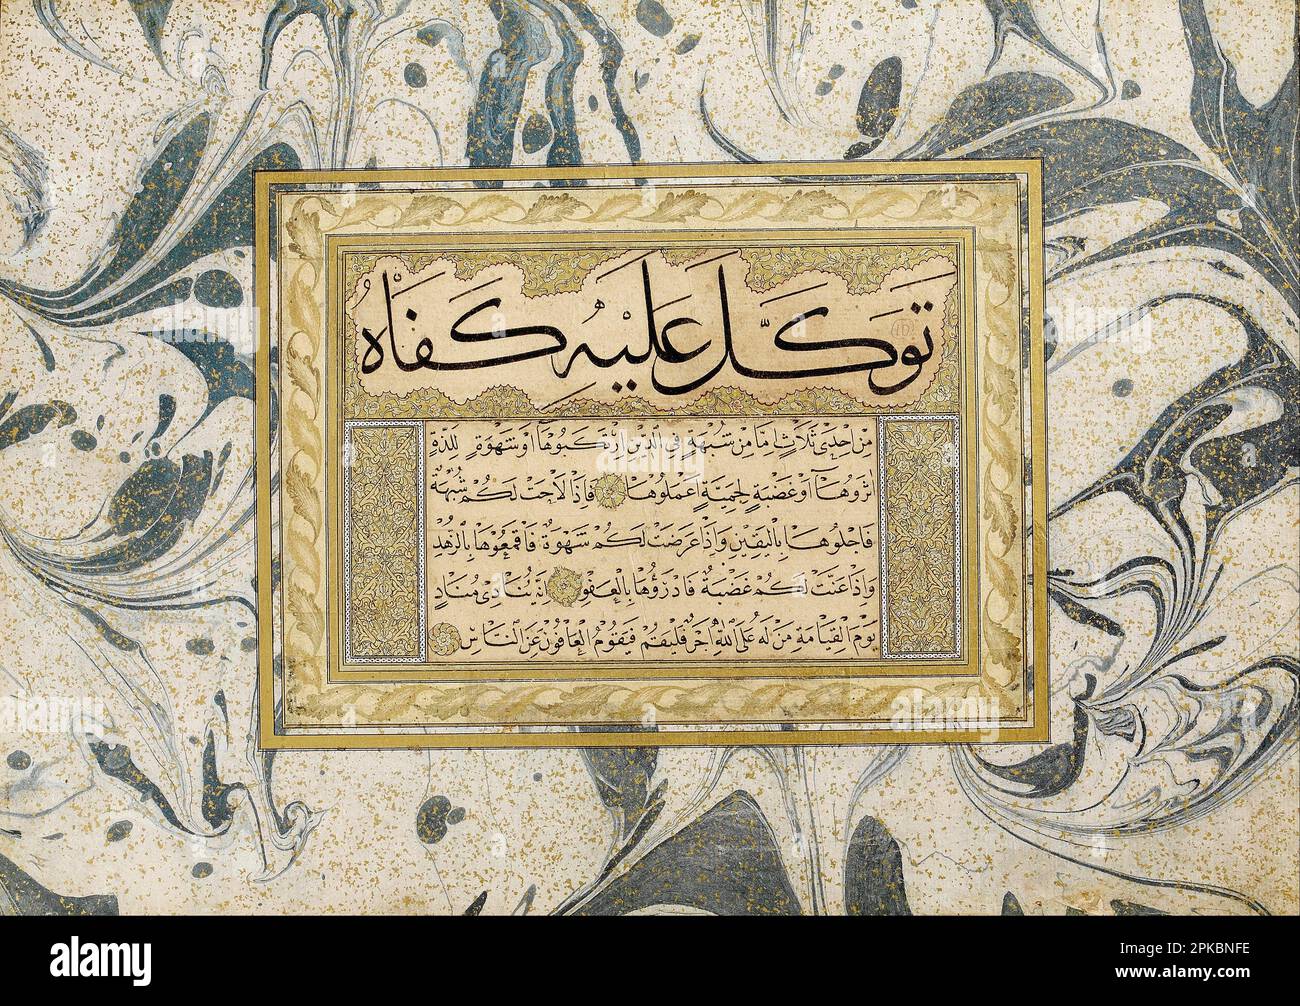 Murakka (kalligrafisches Album) vor 1520 von Seyh Hamdullah (zugeschrieben) Stockfoto